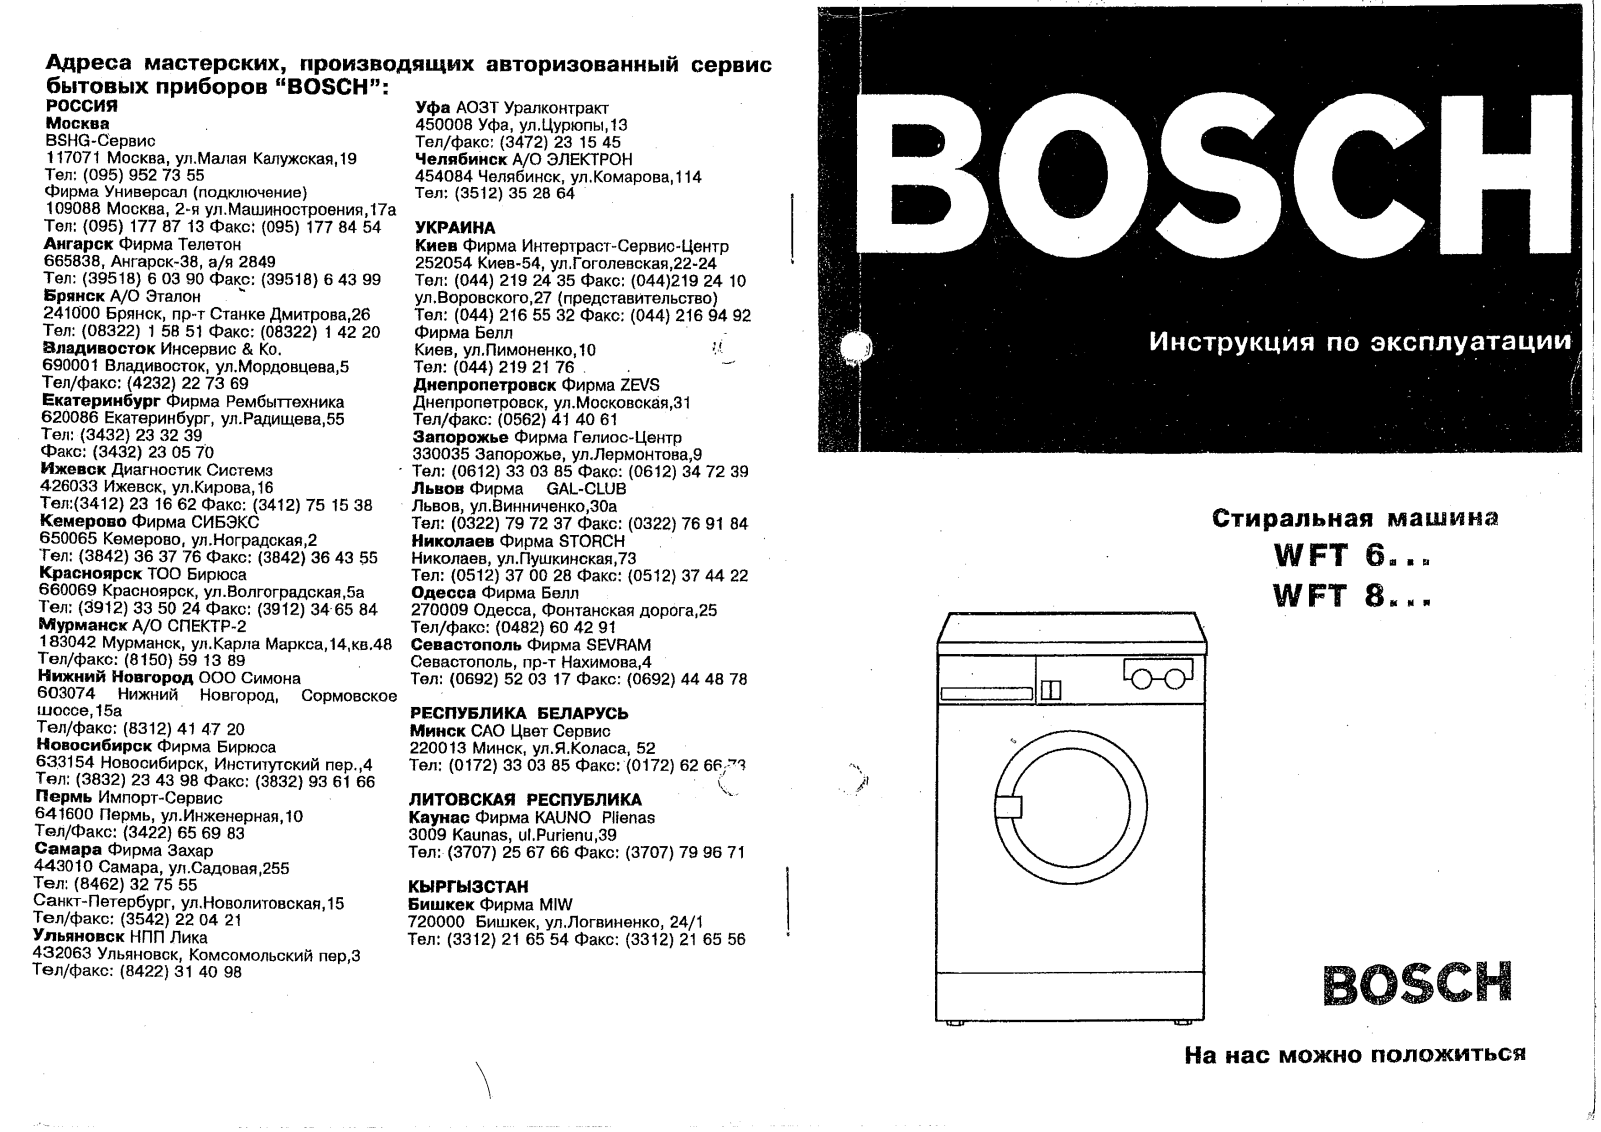 Bosch WFT 8310 User Manual